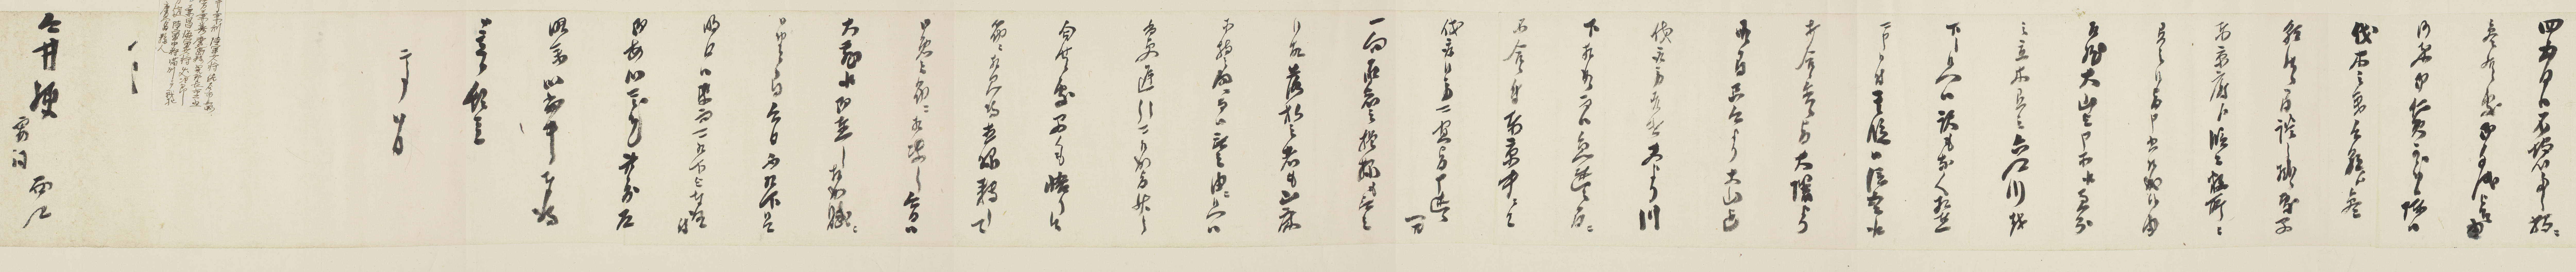 西郷隆盛の手紙 特別初公開のお知らせ 高知城歴史博物館